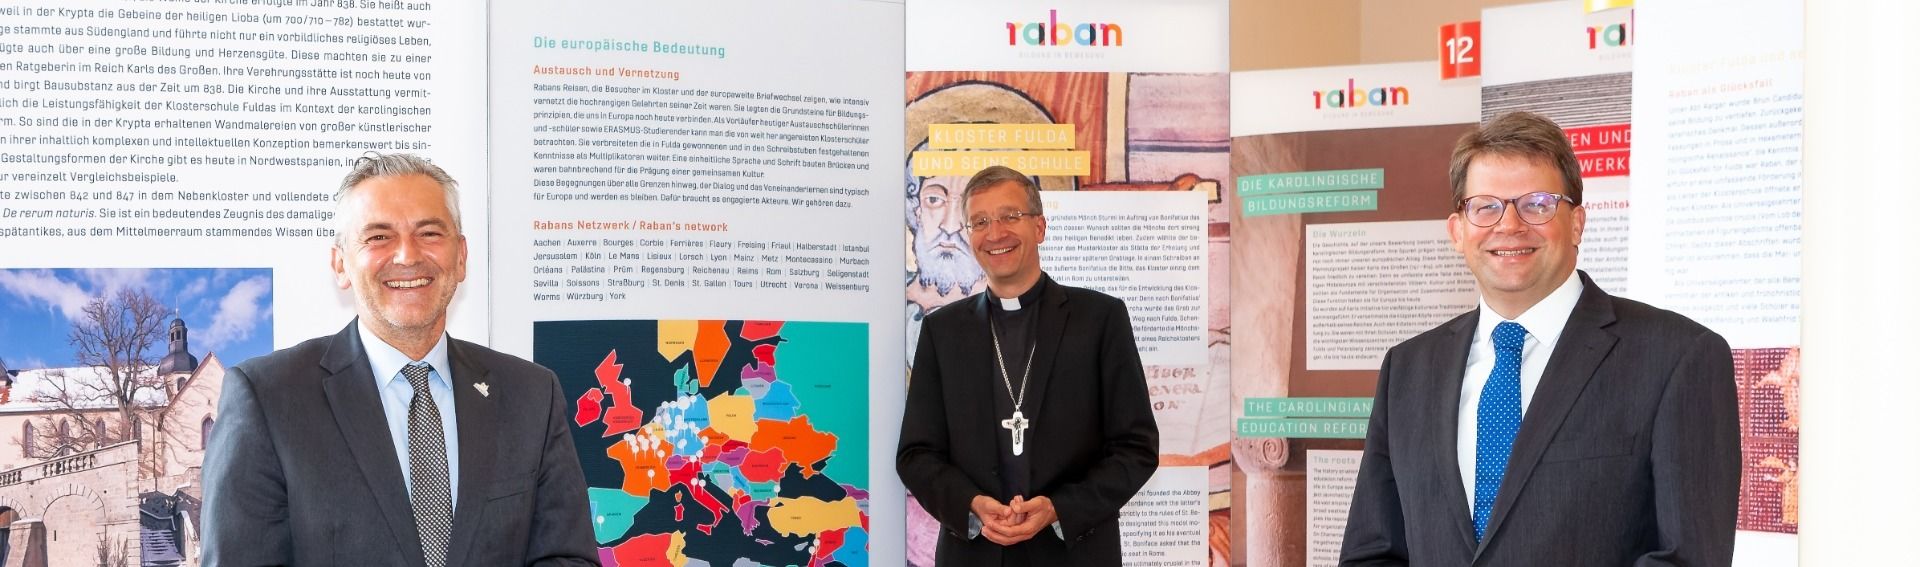 Bistum Fulda unterstützt gemeinsame Bewerbung um Europäisches Siegel